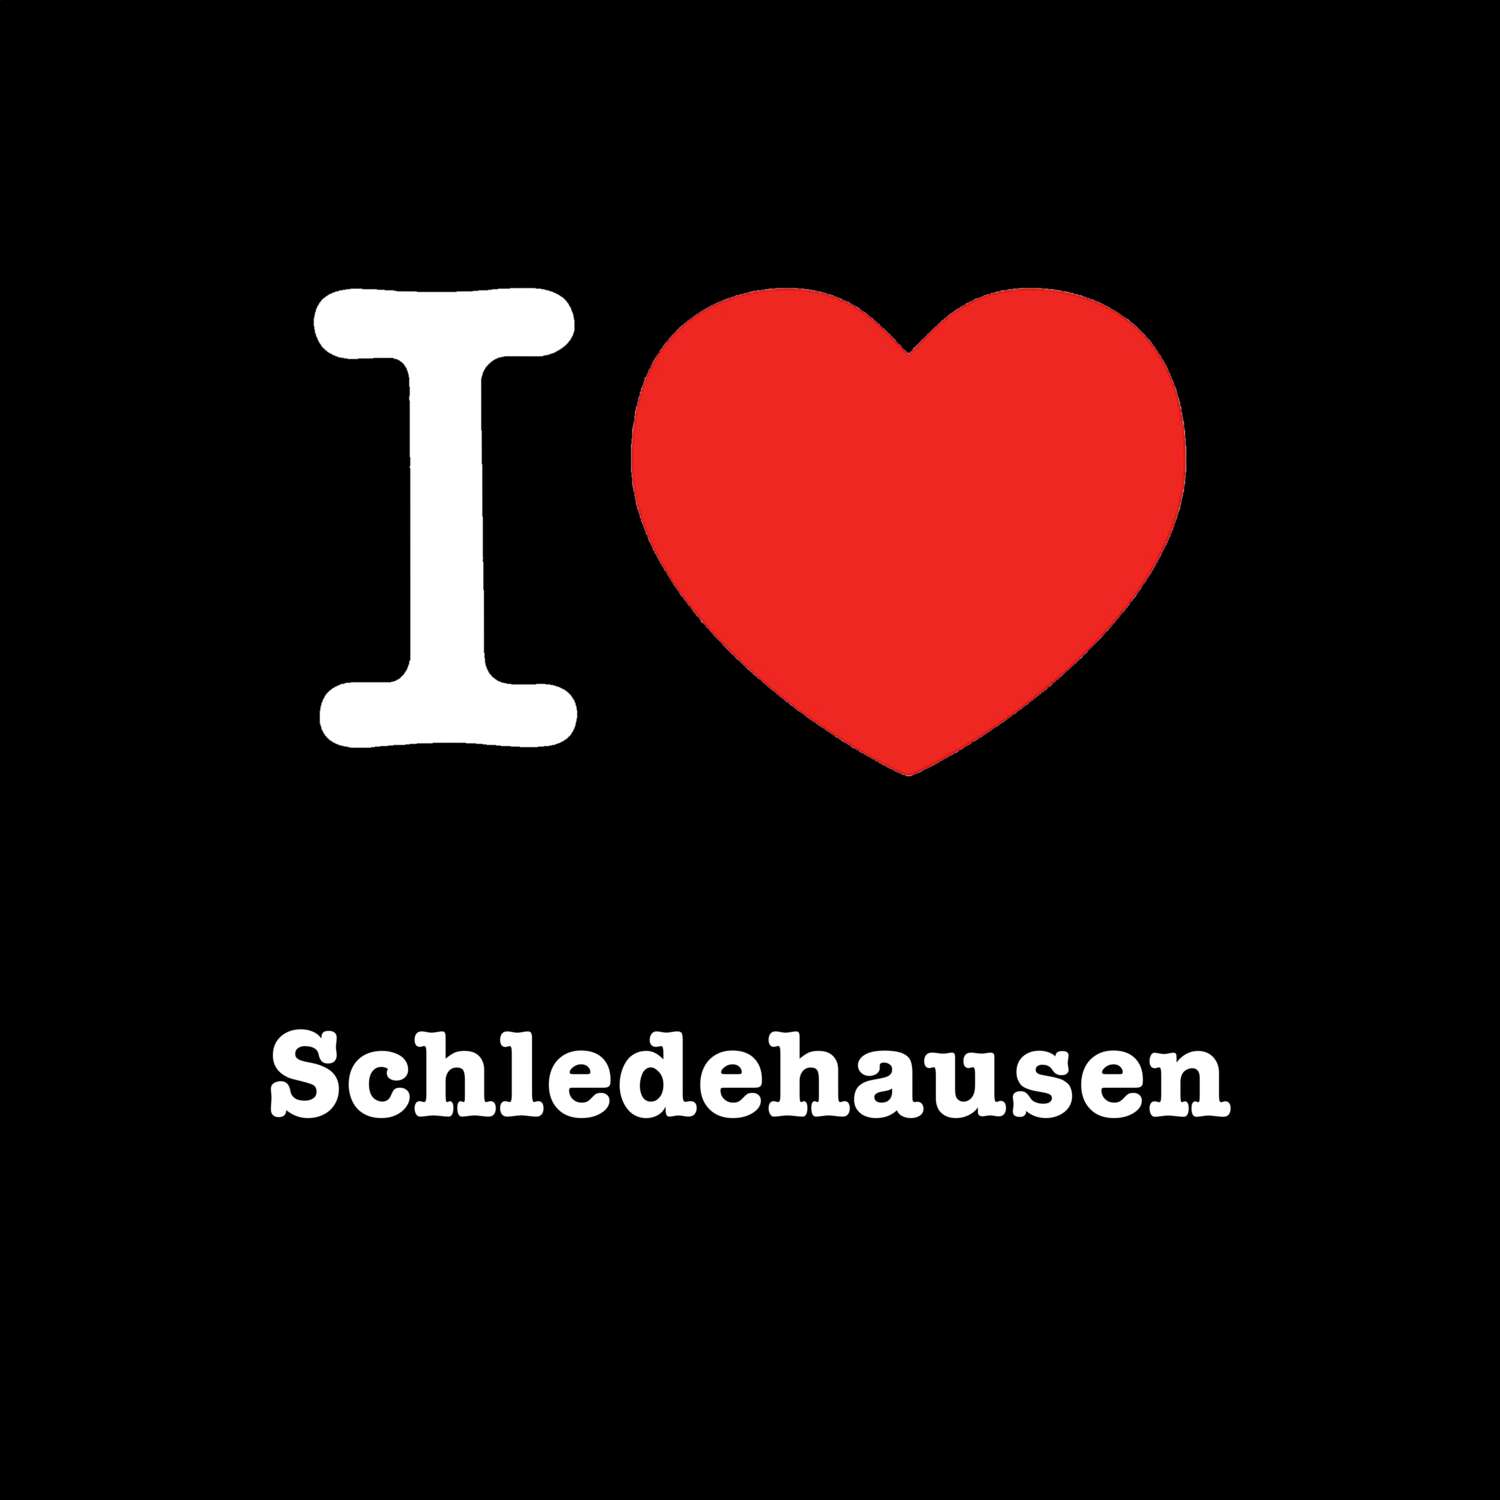 Schledehausen T-Shirt »I love«